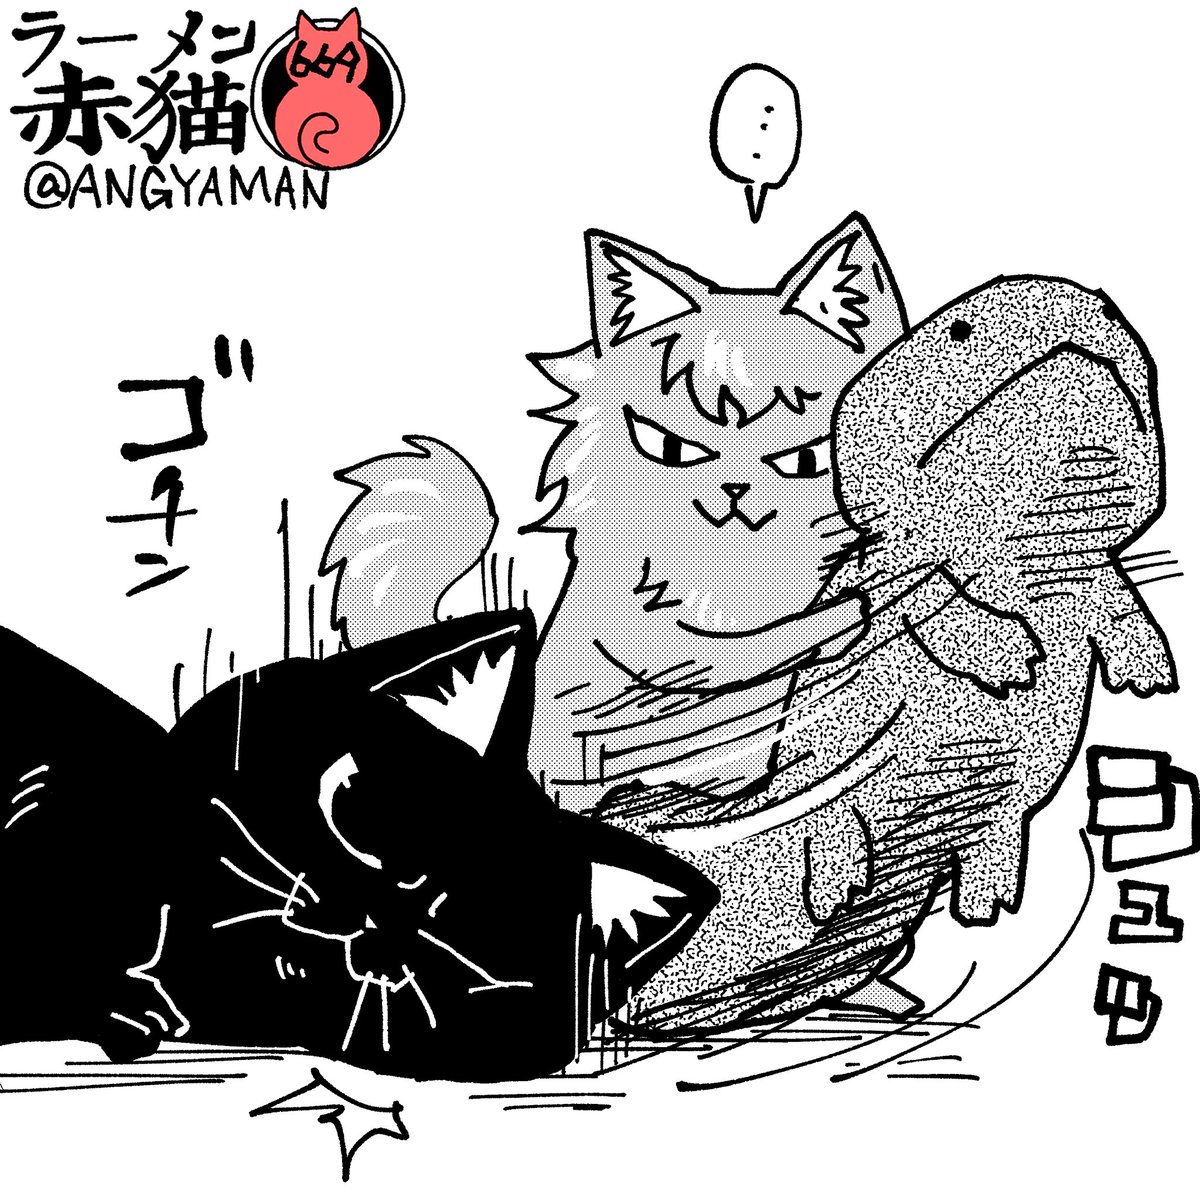 ひきぬき
#ラーメン赤猫 #ジャンププラス
80話 https://t.co/VHwemEj65D 